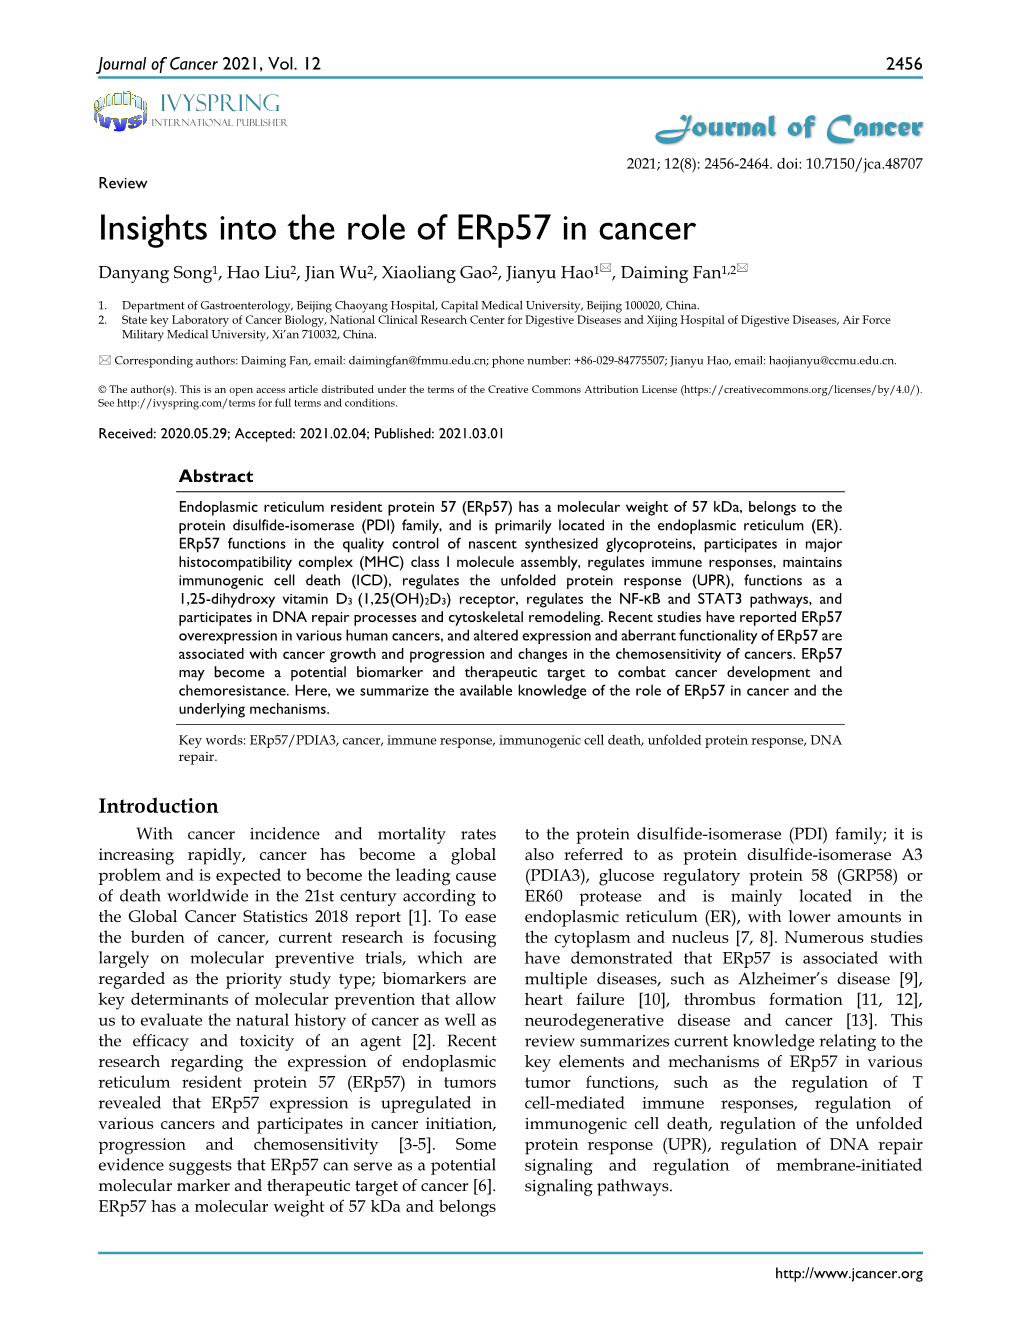 Insights Into the Role of Erp57 in Cancer Danyang Song1, Hao Liu2, Jian Wu2, Xiaoliang Gao2, Jianyu Hao1, Daiming Fan1,2